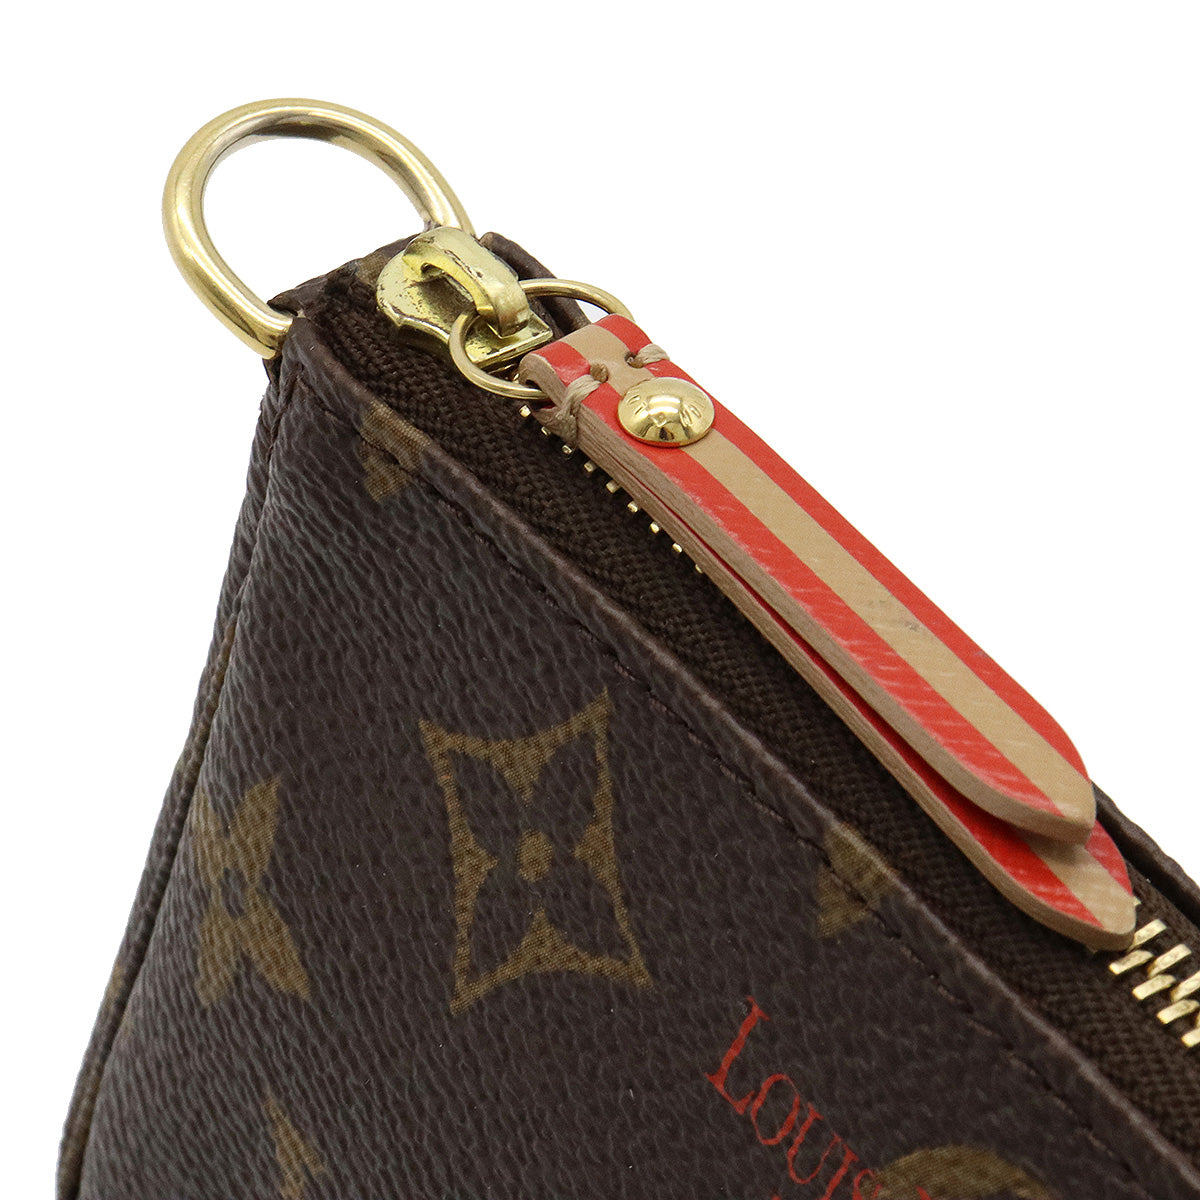 Louis Vuitton Mini Pochette Accessoires Kofferbak M60417